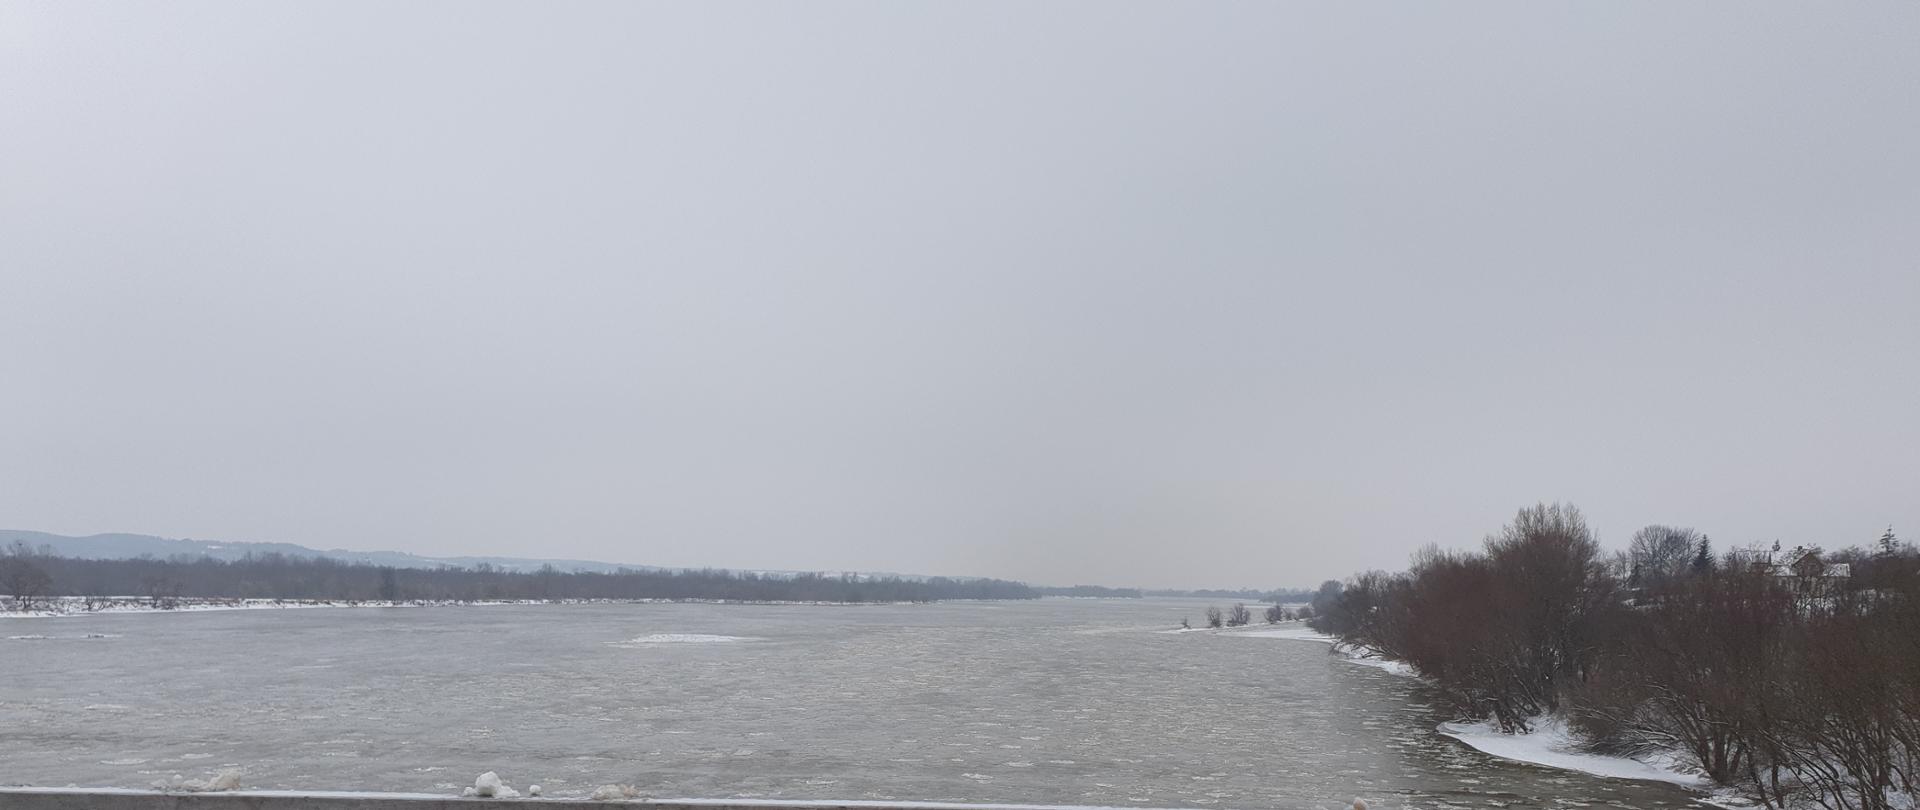 Zdjęcie przedstawia rzekę Wisła. Na powierzchni lustra wody znajdują się pojedyncze kry lodowe.